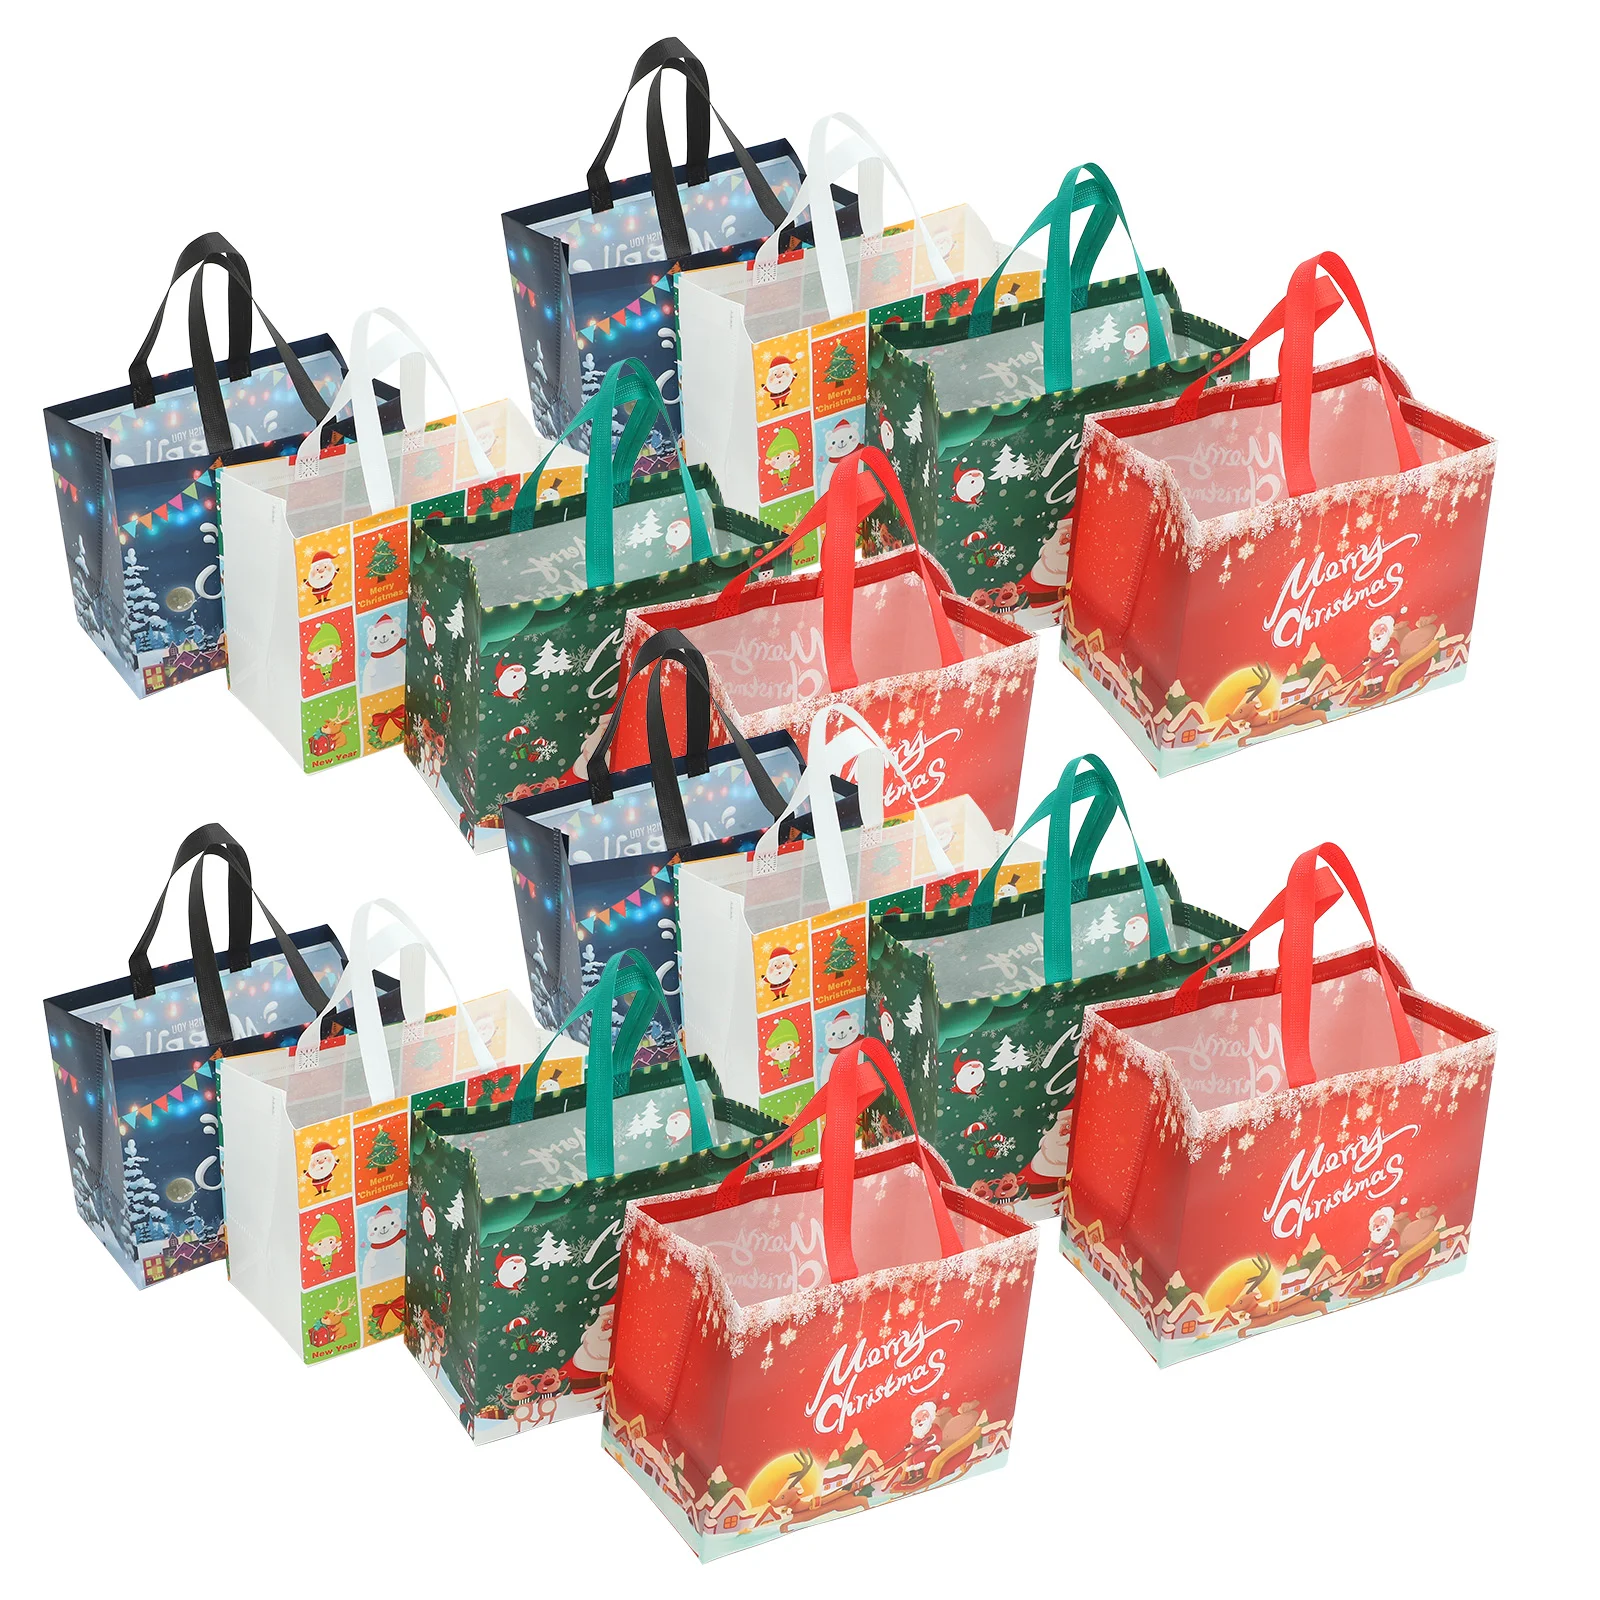 

16 Pcs Reusable Shopping Handbag Xmas Favor Bags Gift Christmas Gifts Packing Party Favors Themed Lamination